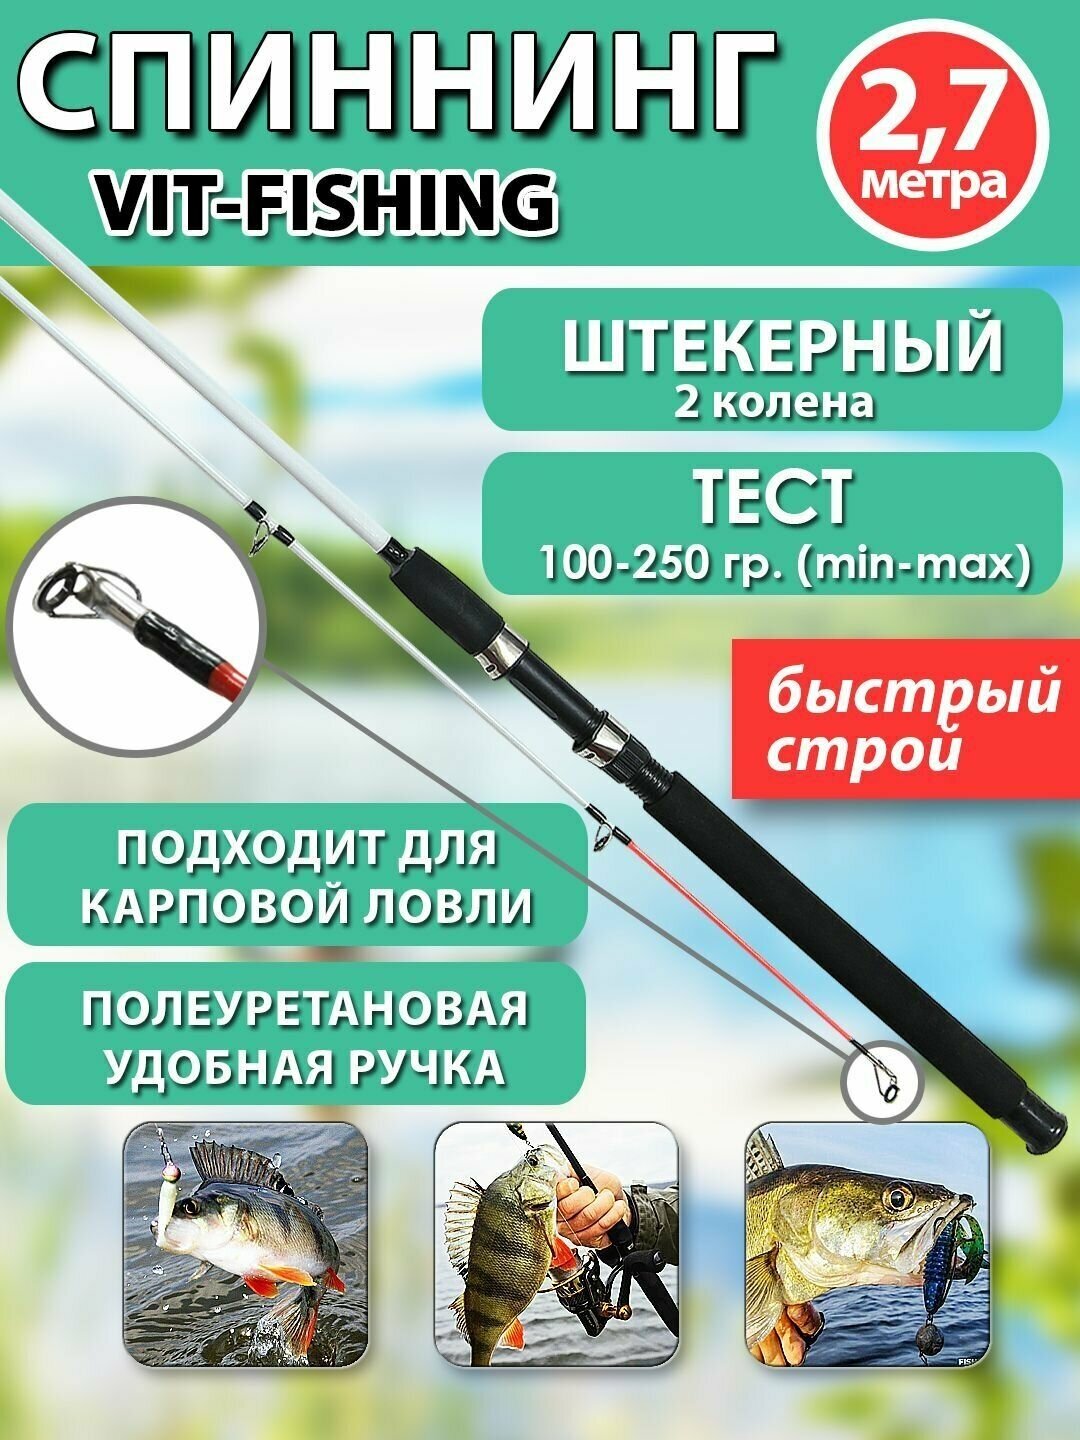 Спиннинг фидерный VITFISHING, штекерный 2 колена, 2.7 м, для летней рыбалки белый, быстрый строй, тест 100-250